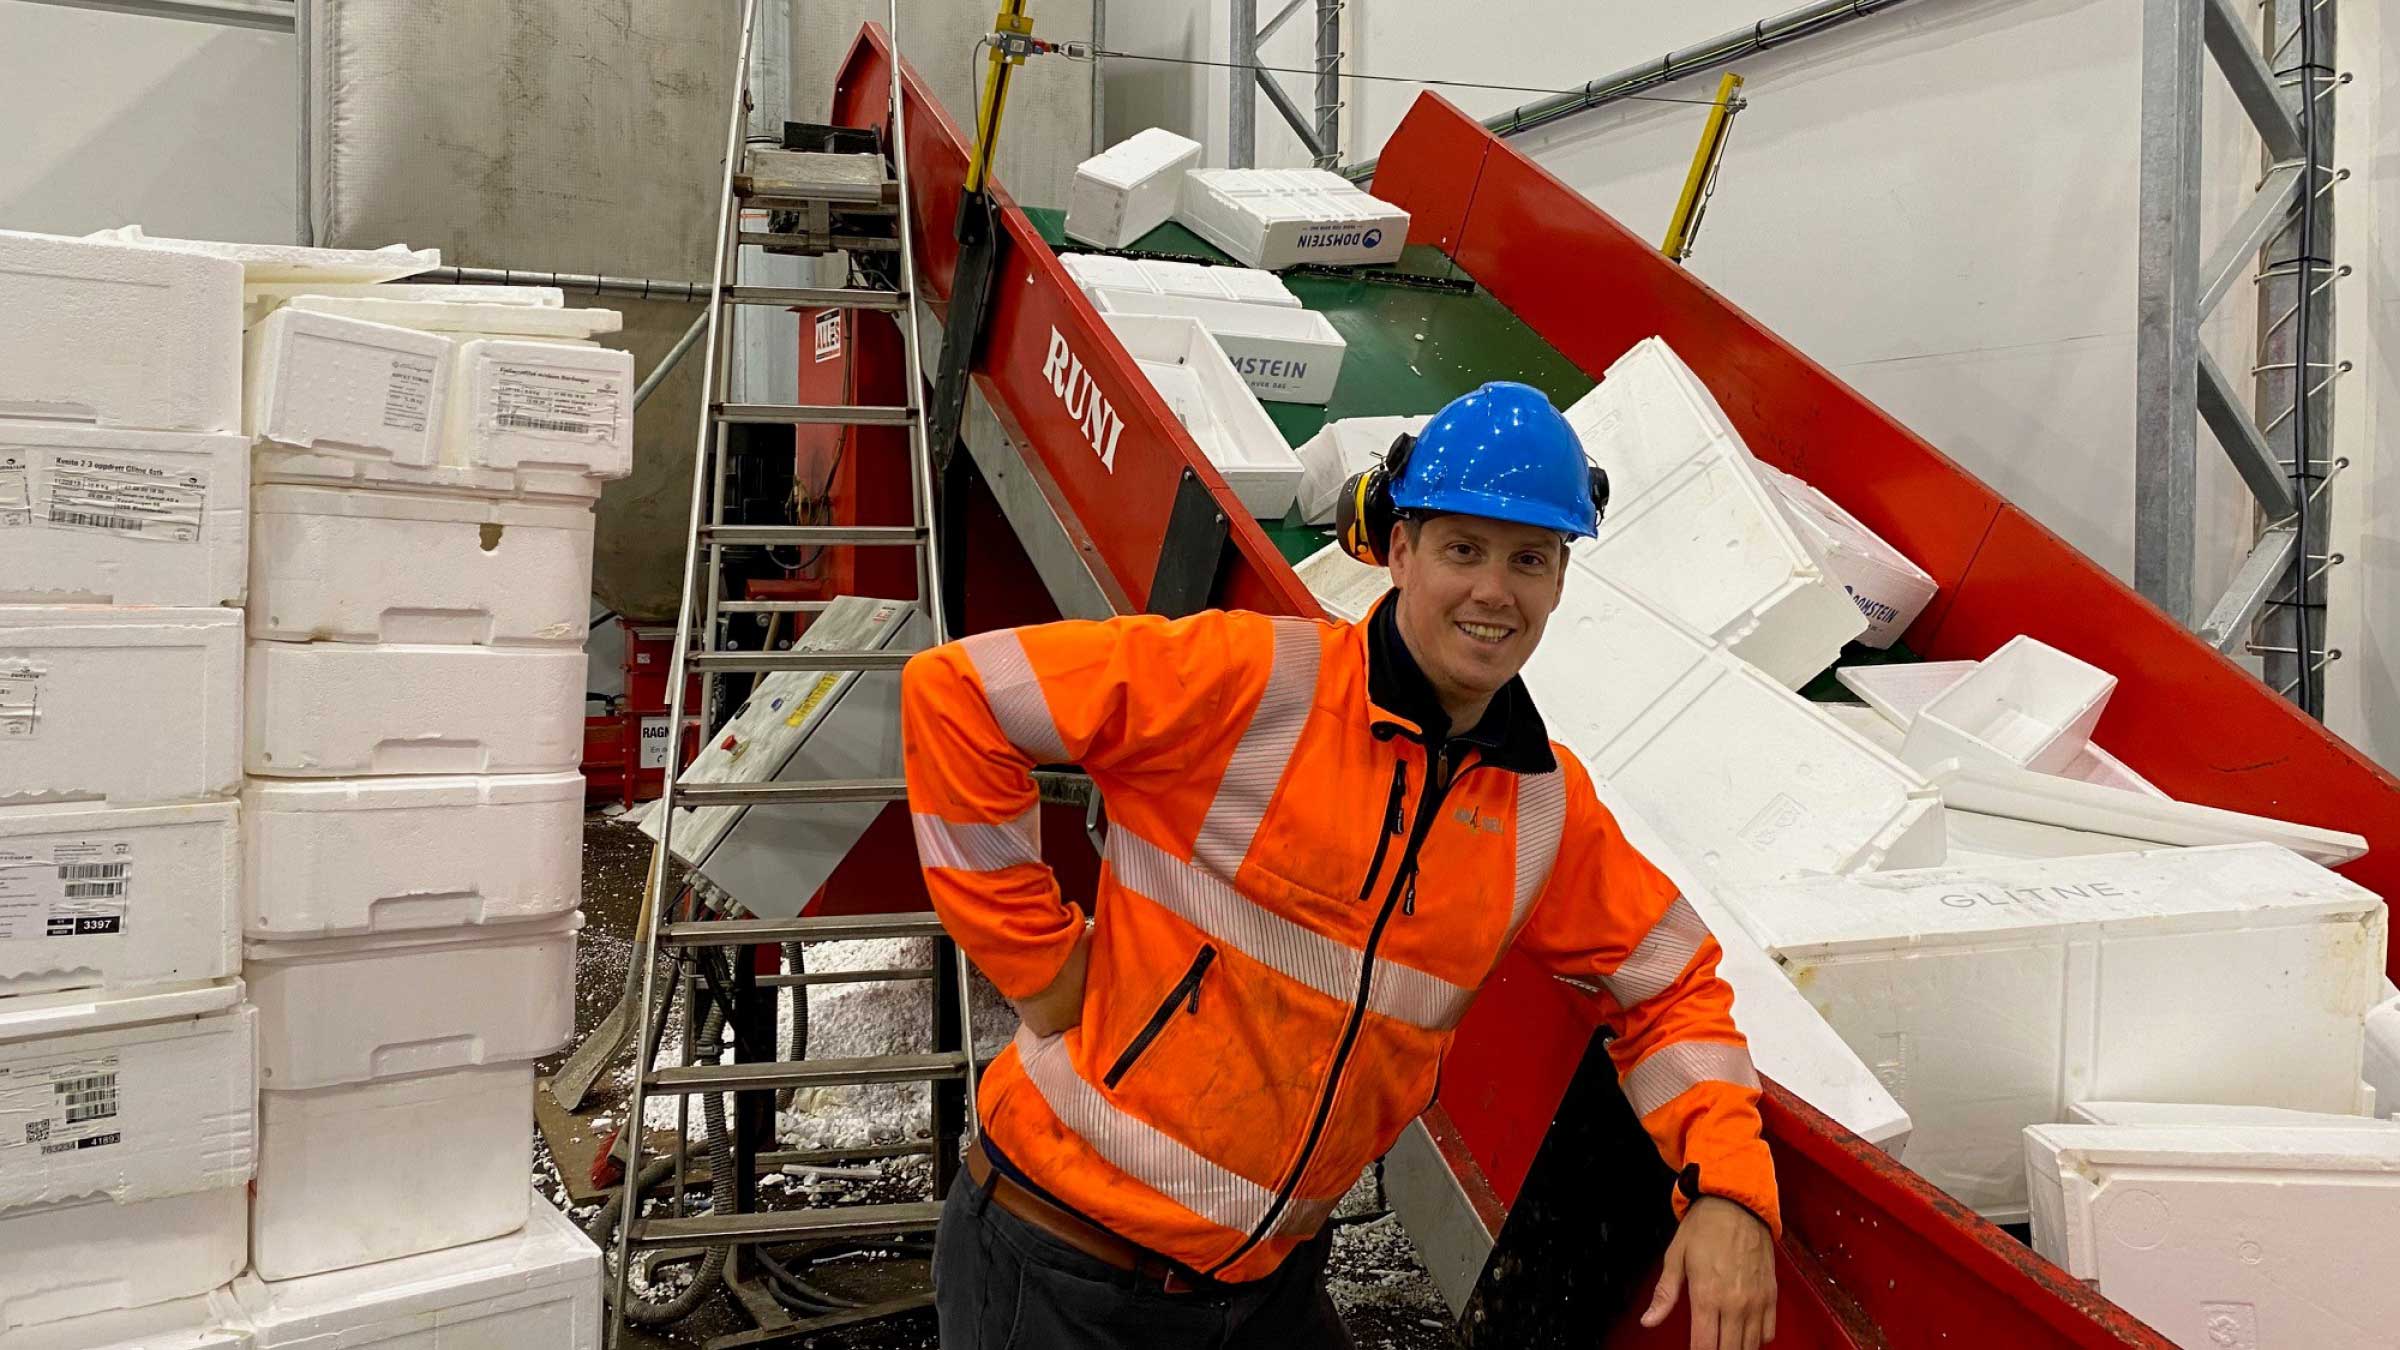 Hos Ragn-Sells avdeling i Bergen sørger en dansk skrukomprimator for at norske fiskekasser gjenvinnes til nytt materiale og går inn i sirkulærøkonomien.